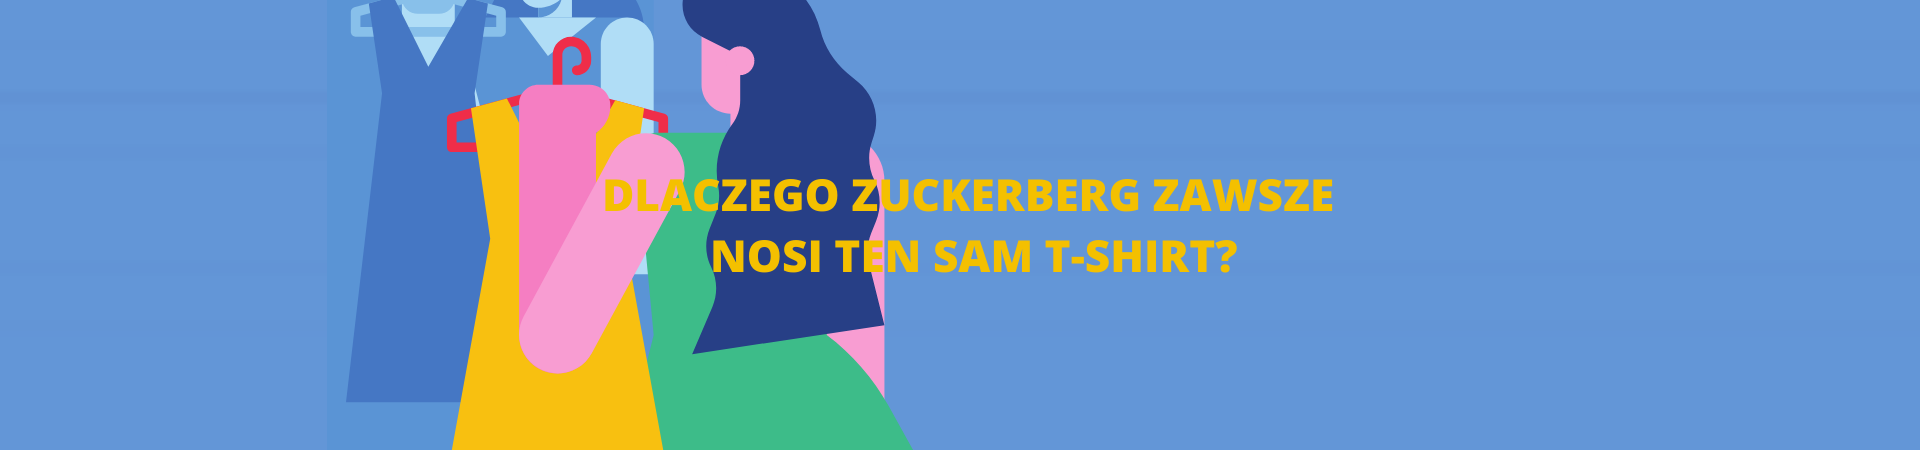 Dlaczego Zuckerberg zawsze nosi ten sam t-shirt?